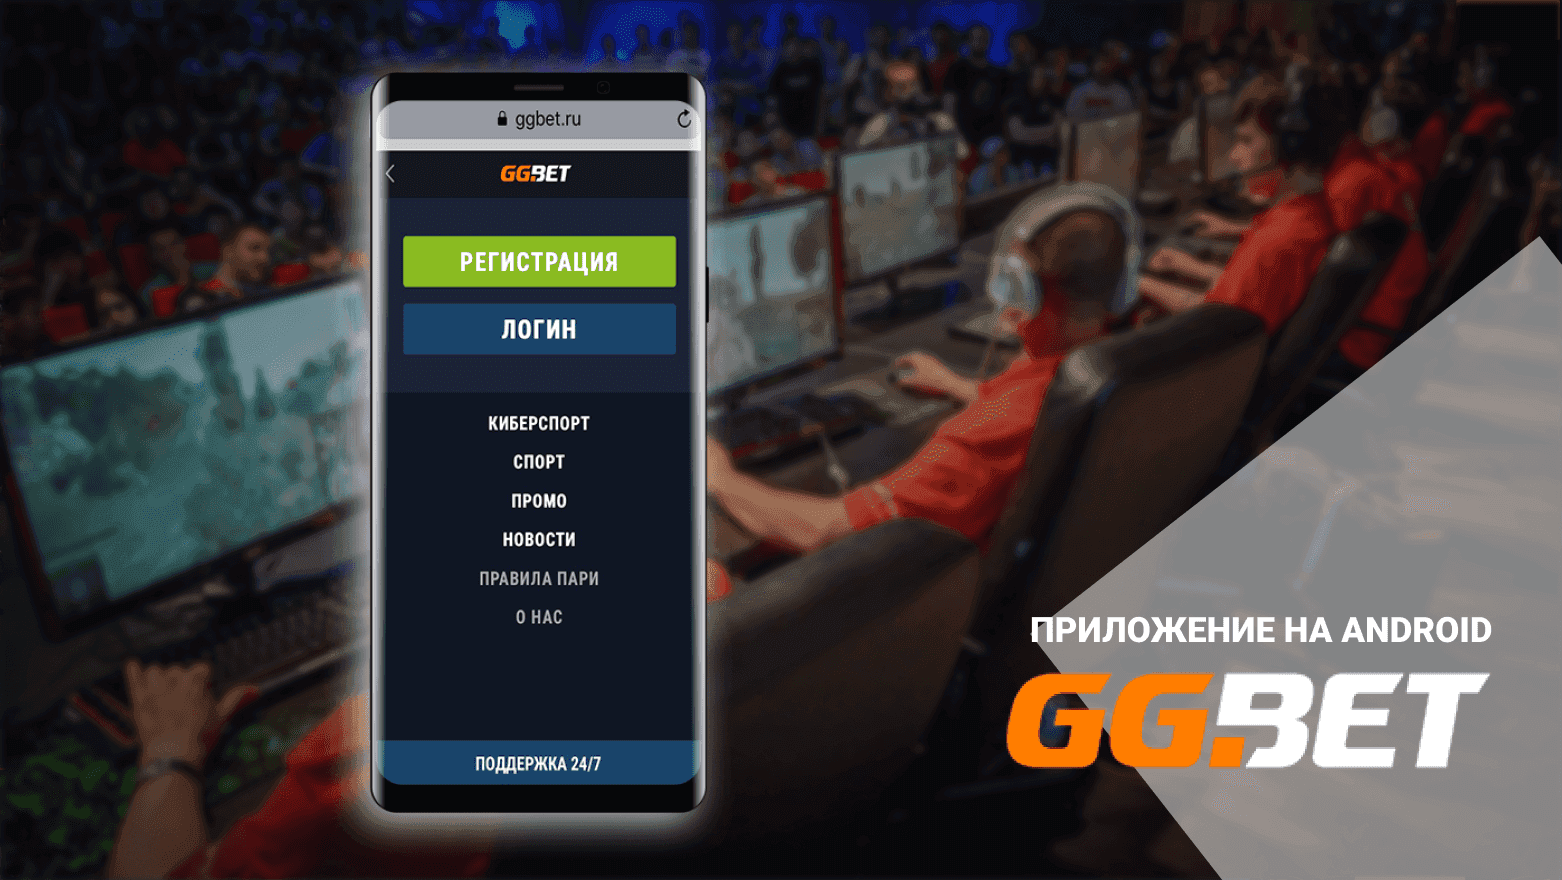 Ггбет мобильное ggbet site belorussia net ru. GGBET приложение. Приложения БК GGBET. Букмекер Android app.